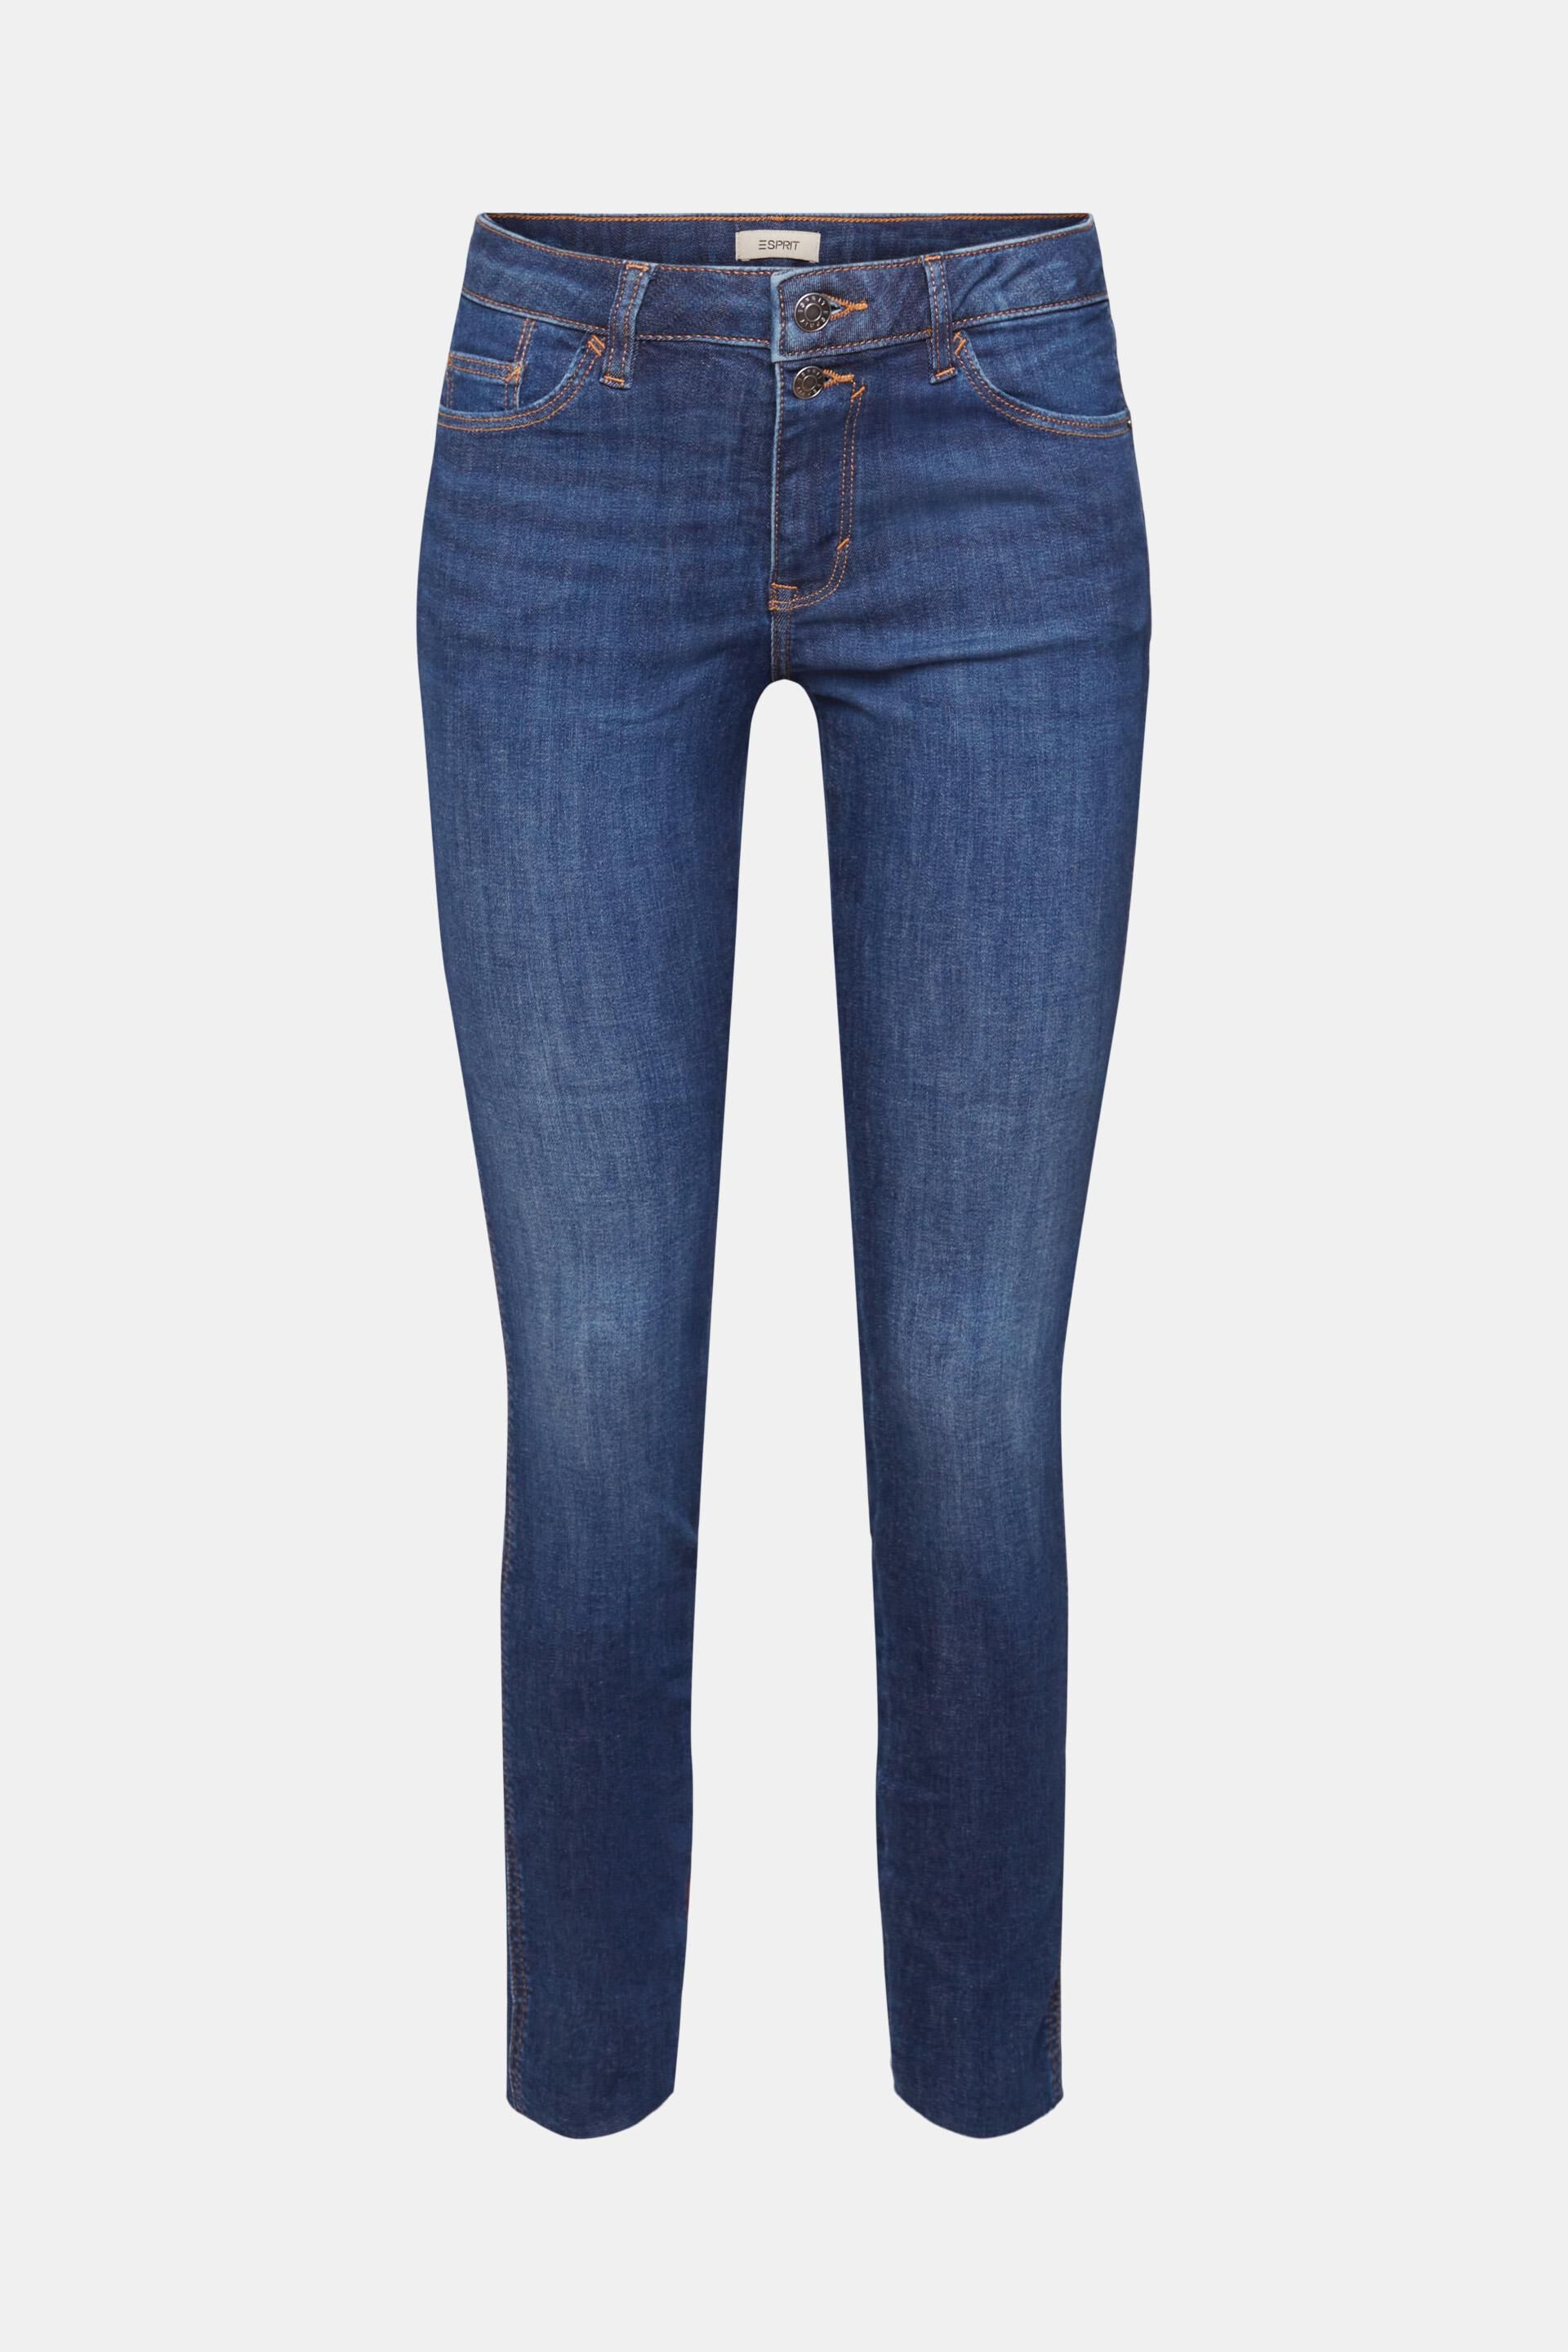 Jean court skinny taille haute Audrey avec poches zippées De Bijenkorf Femme Vêtements Pantalons & Jeans Jeans Taille haute 